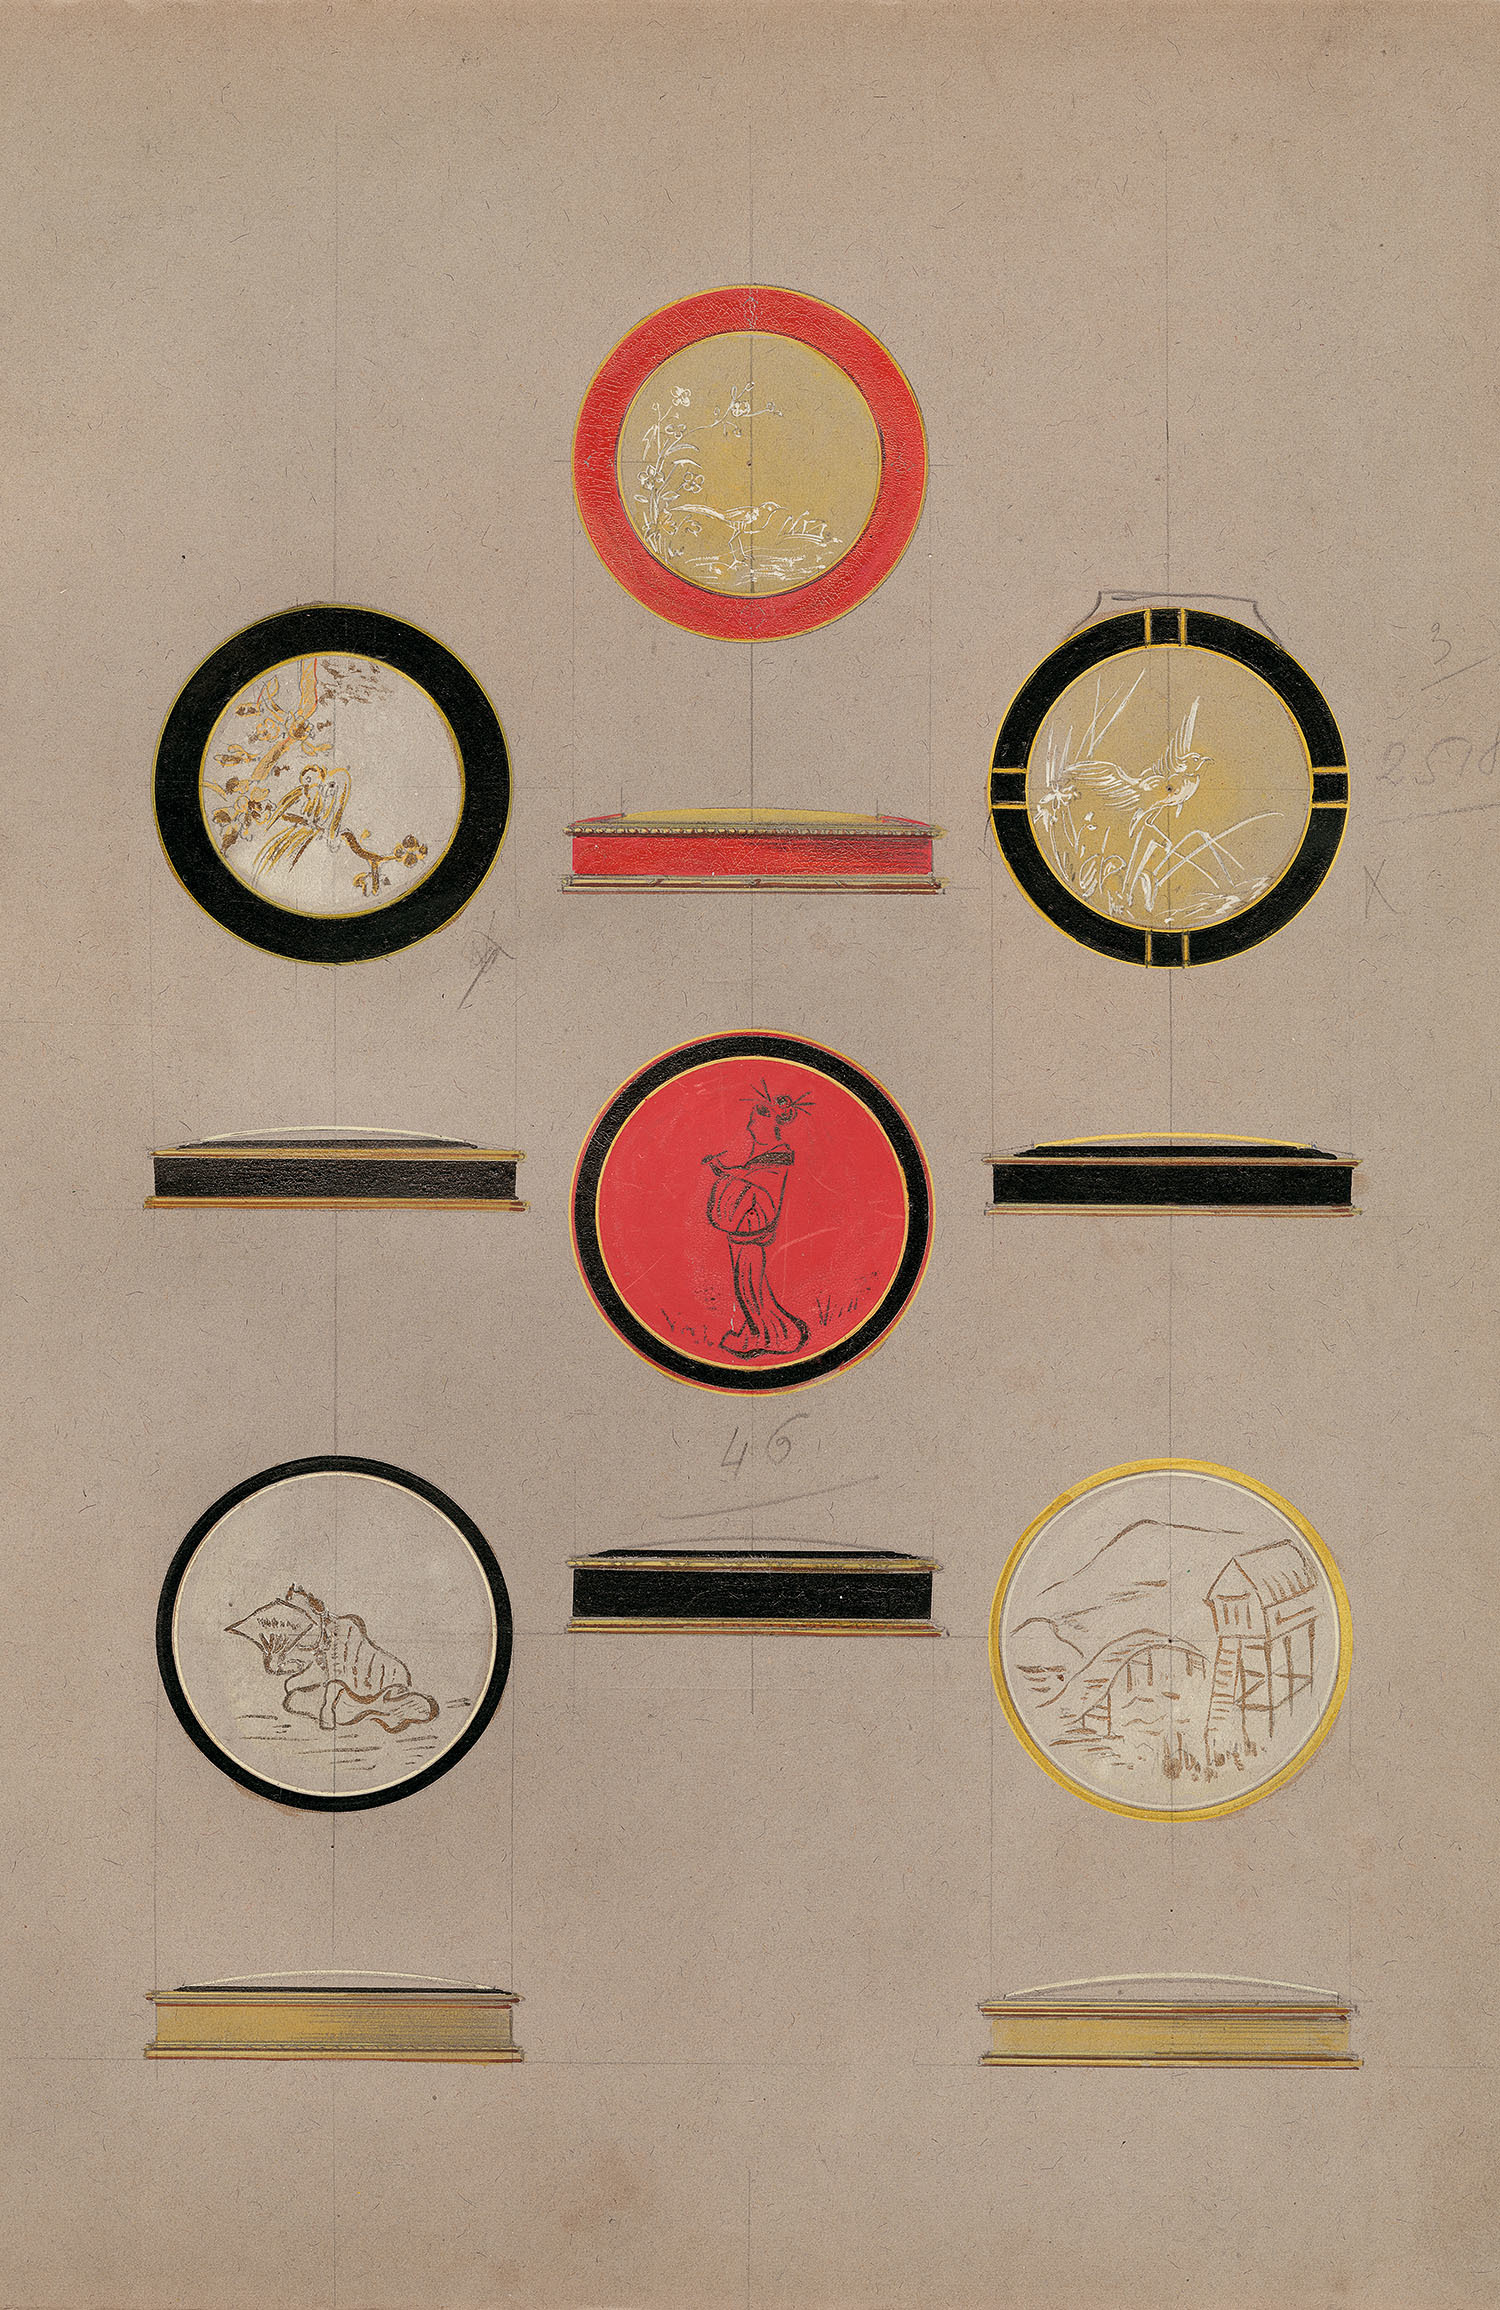 ショーメデザイン工房 《「日本風」のデザイン画》 人物、風景、自然モティーフの化粧ケース 1925年頃 鉛筆、グアッシュ、墨 ショーメ・コレクション、パリ (C) Chaumet